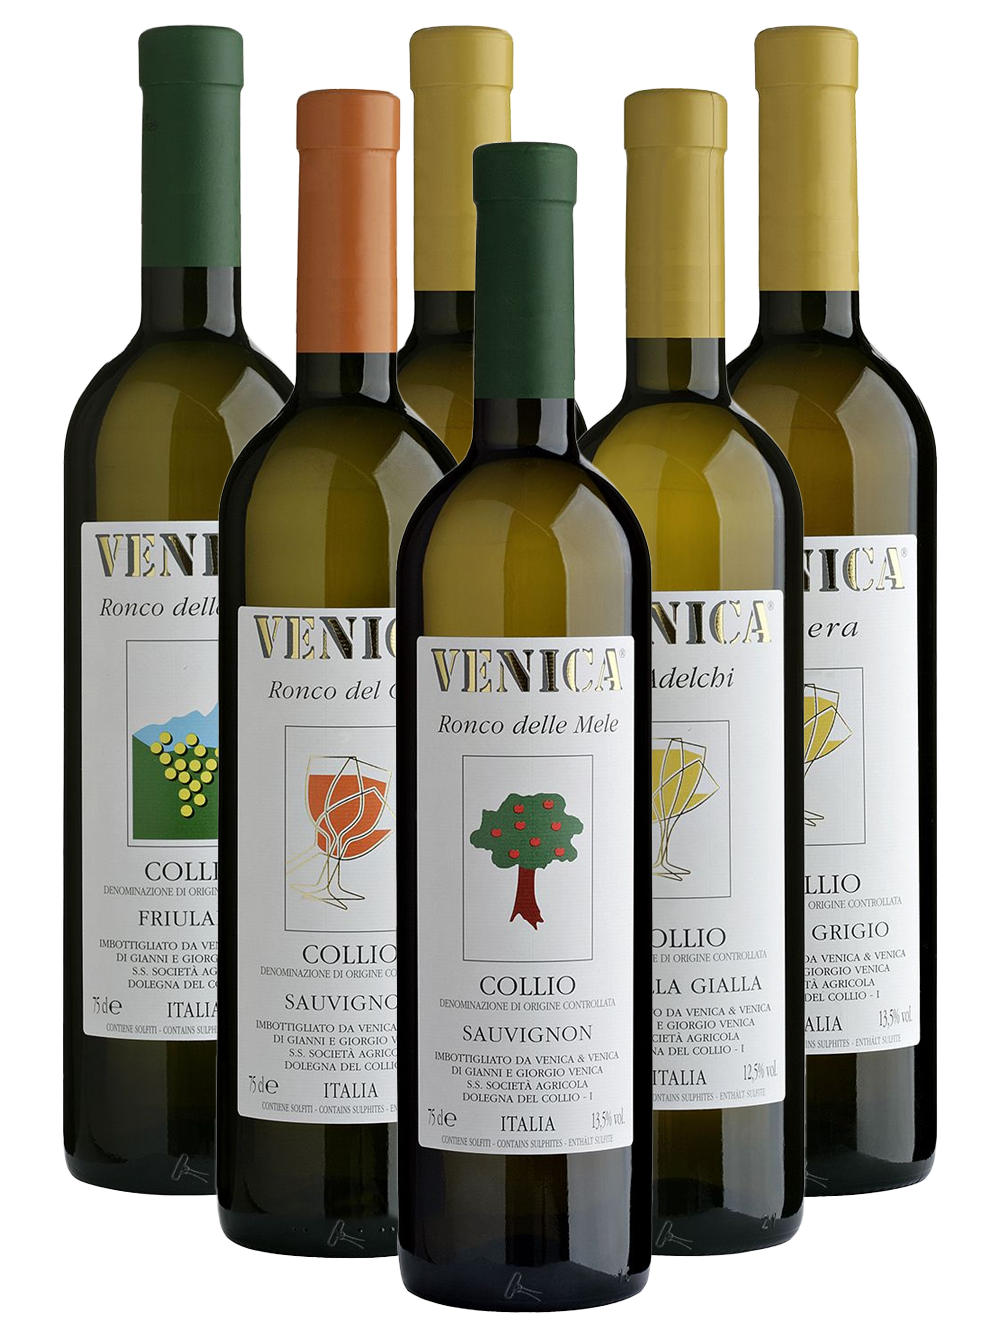 Ontdek de wijnen van Venica & Venica